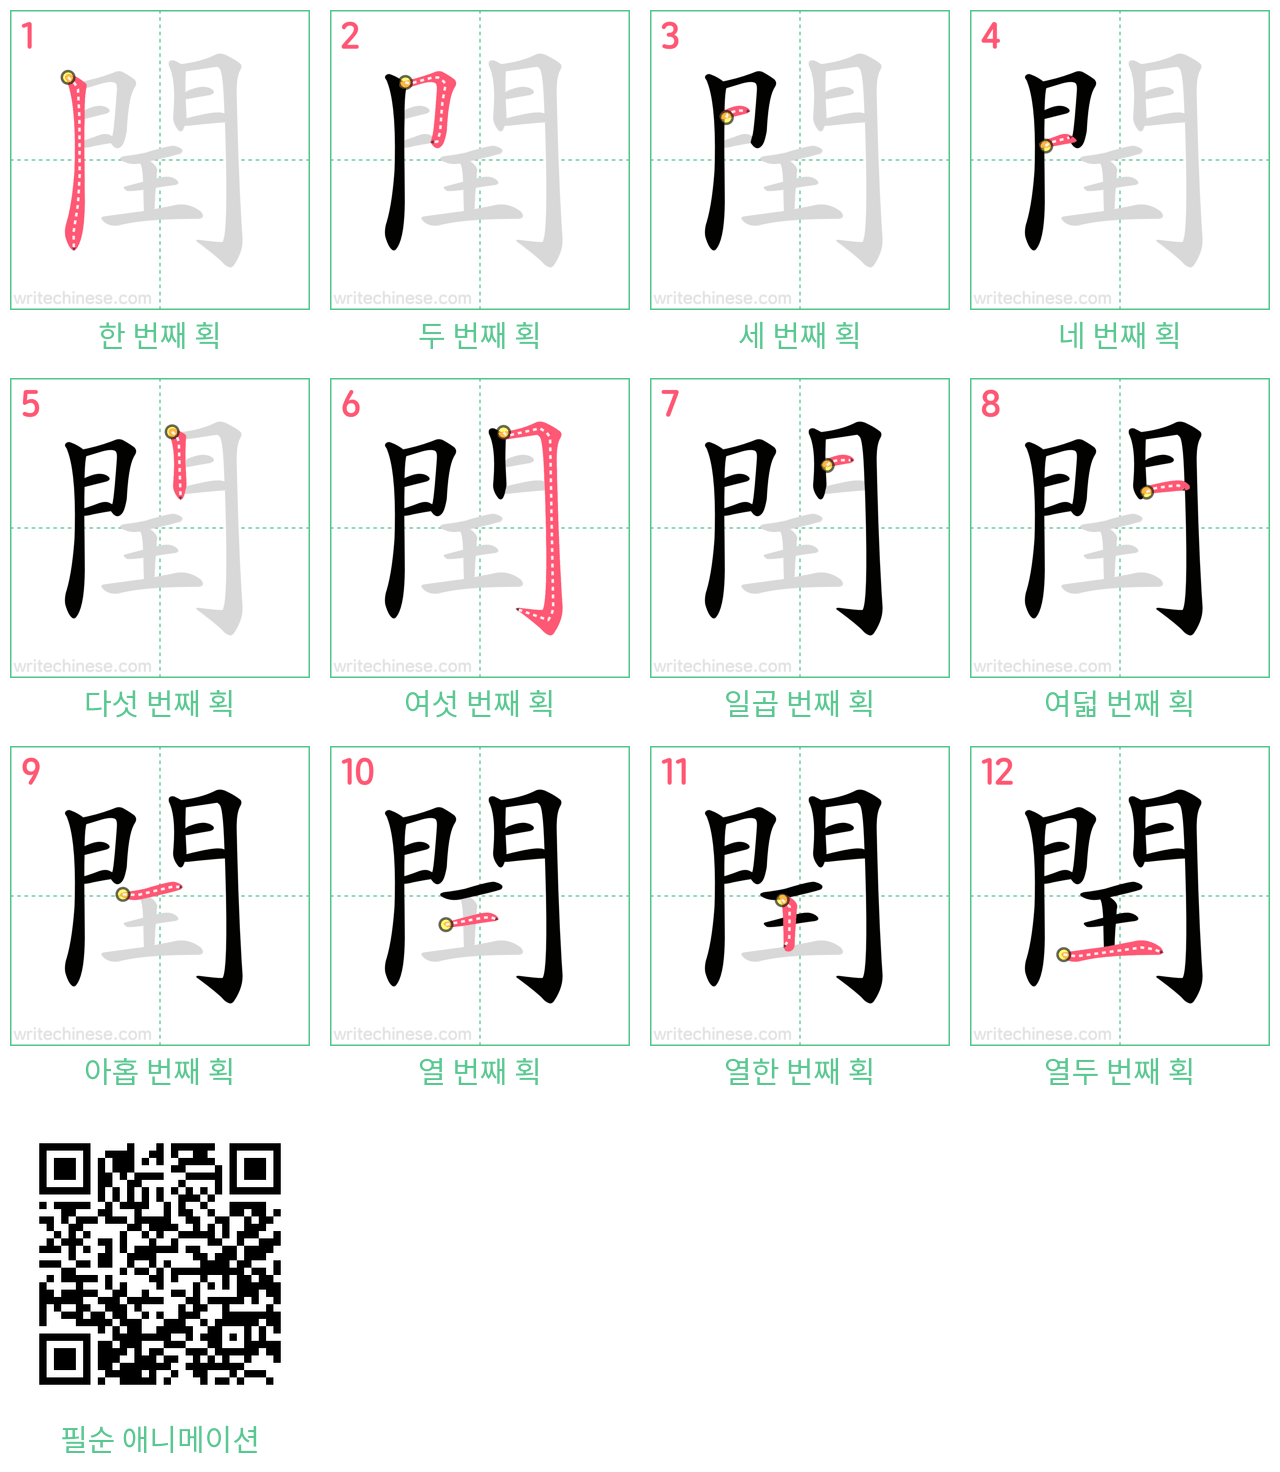 閏 step-by-step stroke order diagrams